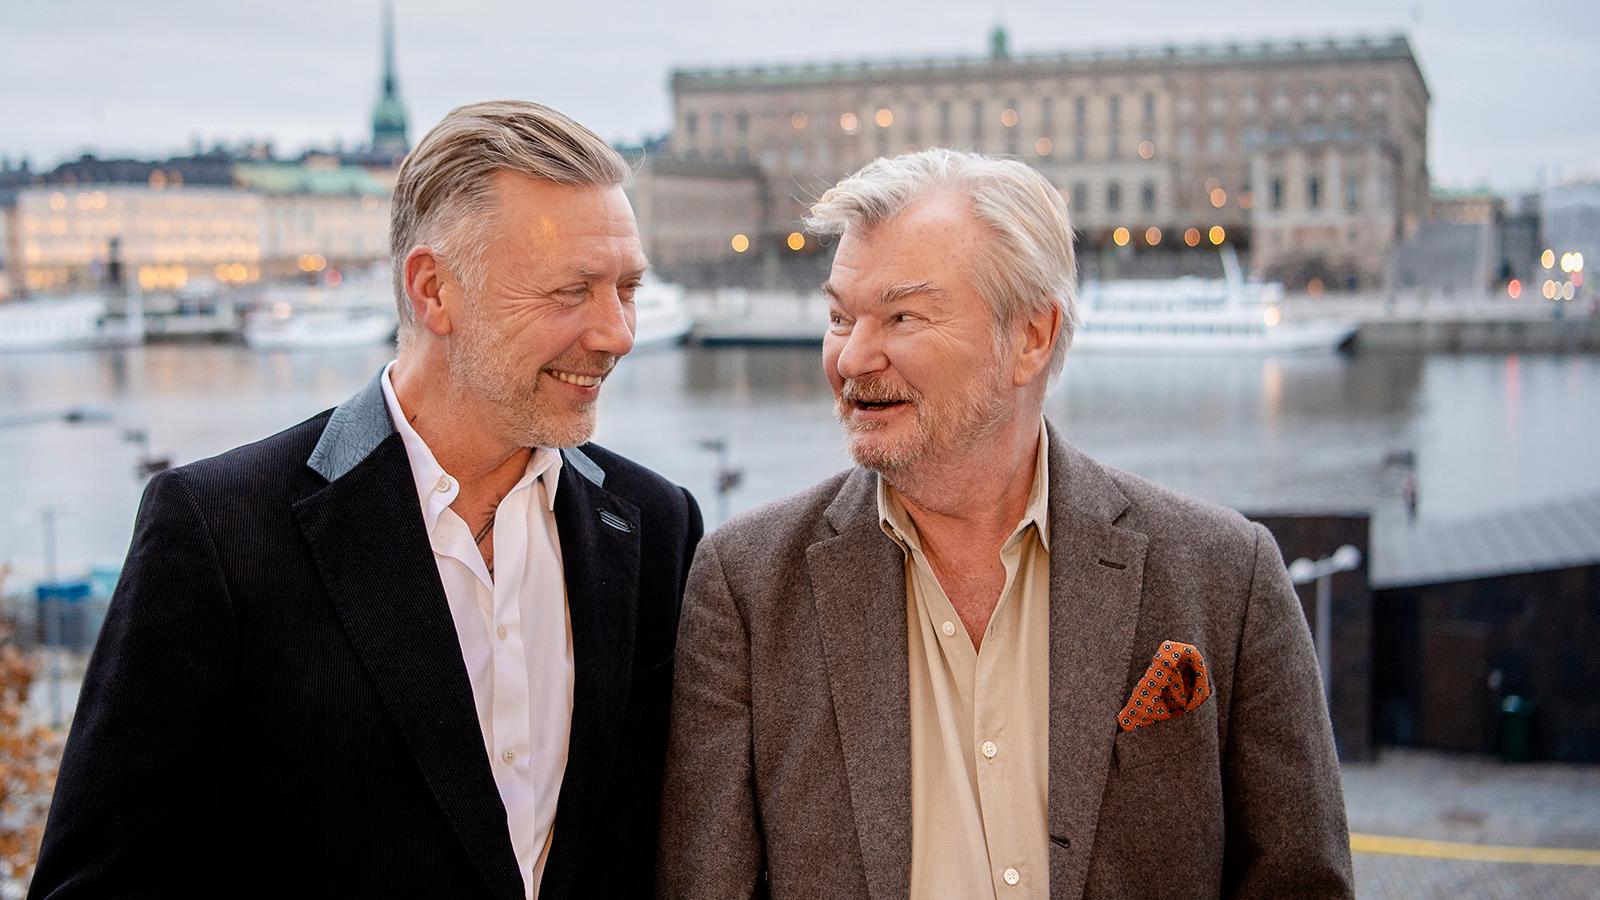 Mikael Persbrandt och regissören Peter Dalle som är aktuella i filmen ”Tills solen går upp”.